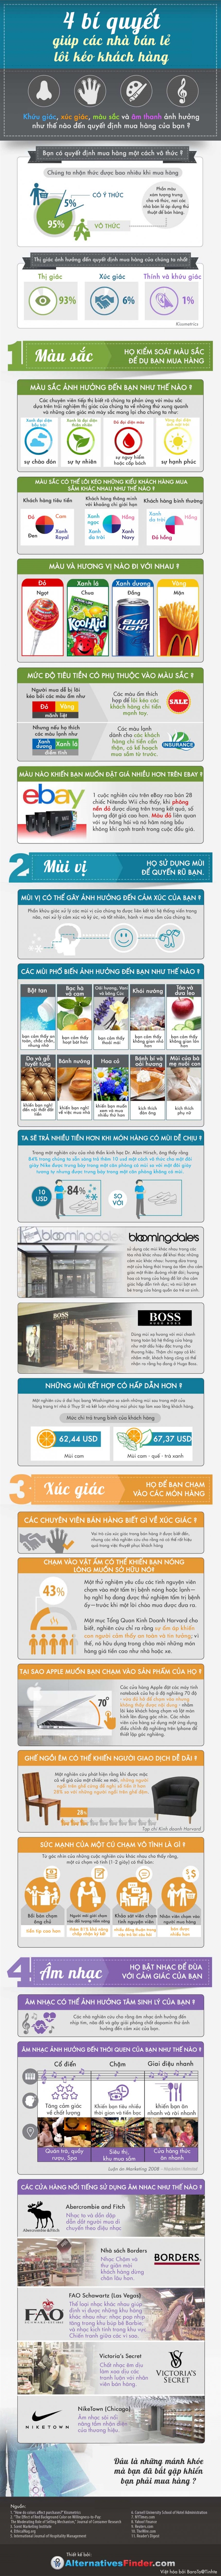 [Infographic] 4 bí quyết giúp các nhà bán lẻ lôi kéo được khách hàng.